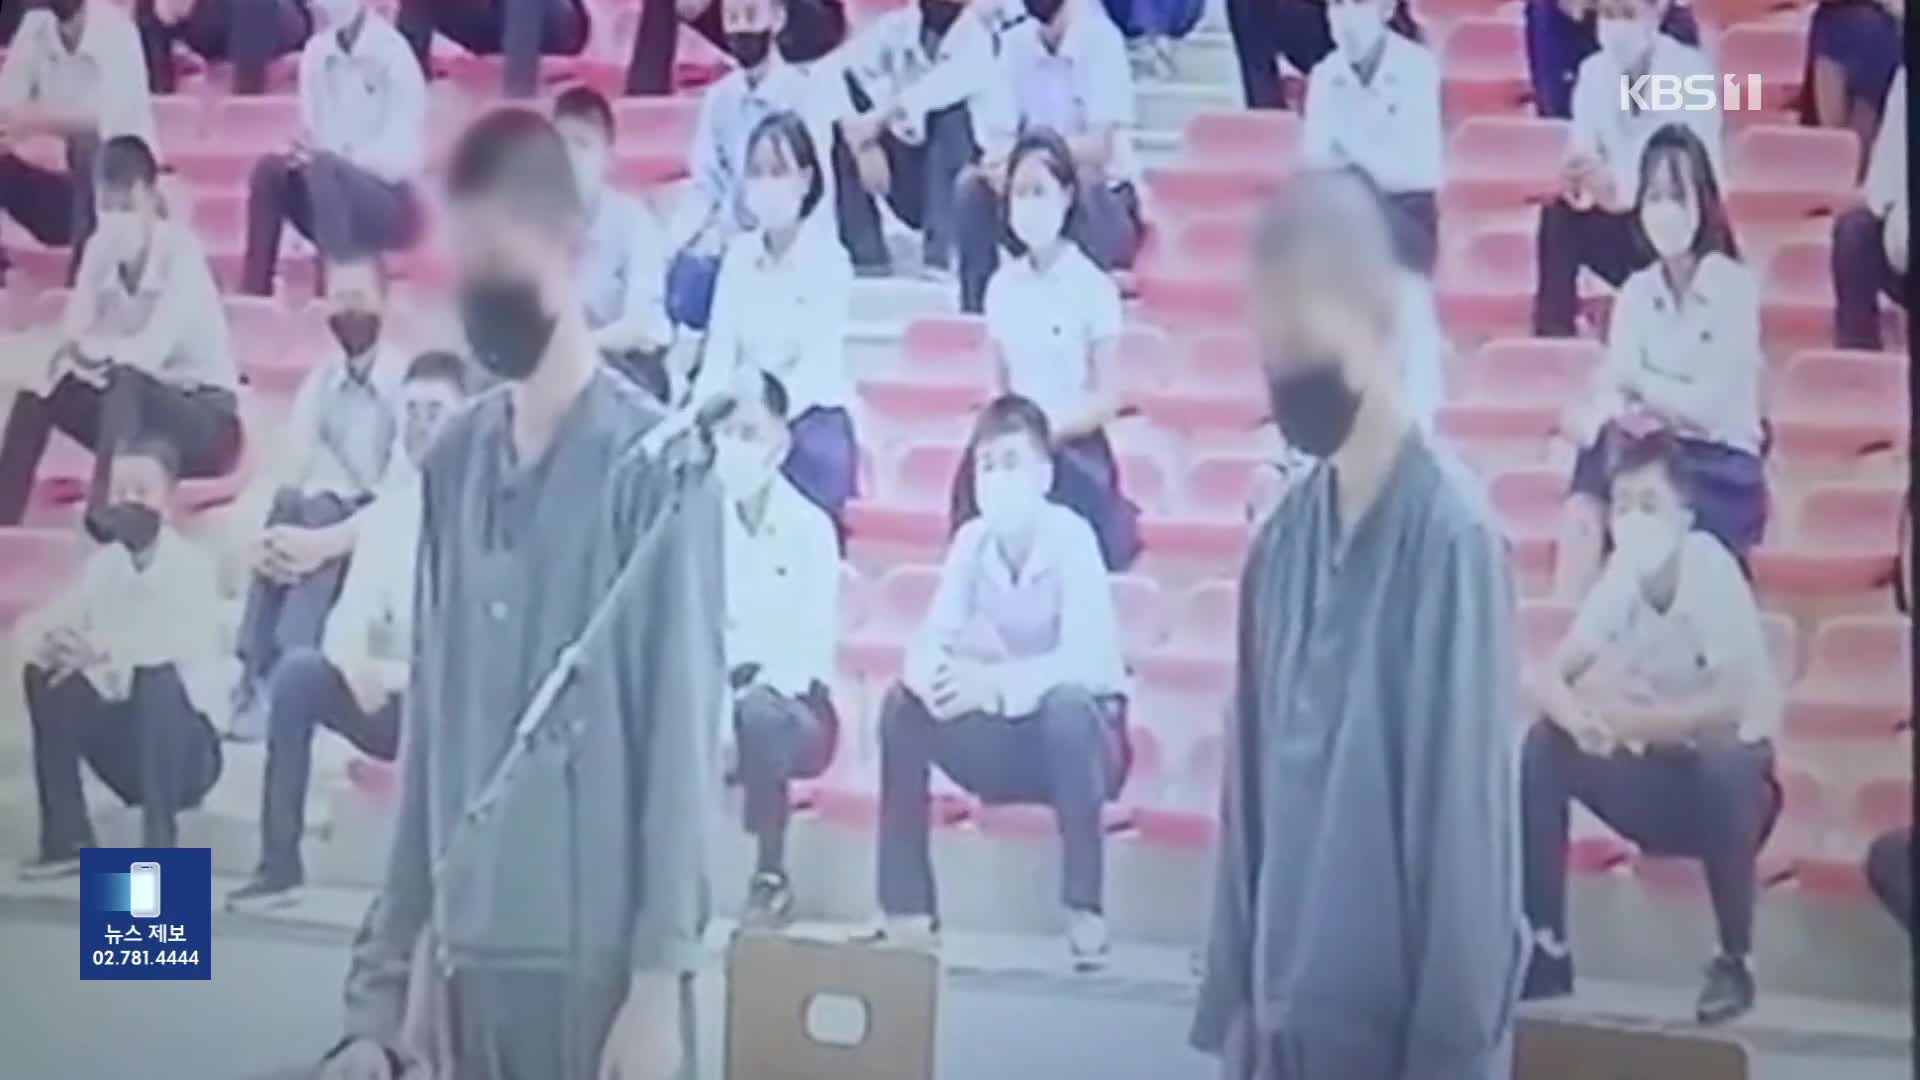 “한국 드라마 돌려본 죄, 12년 노동형”…북한 청소년 공개재판 영상 입수